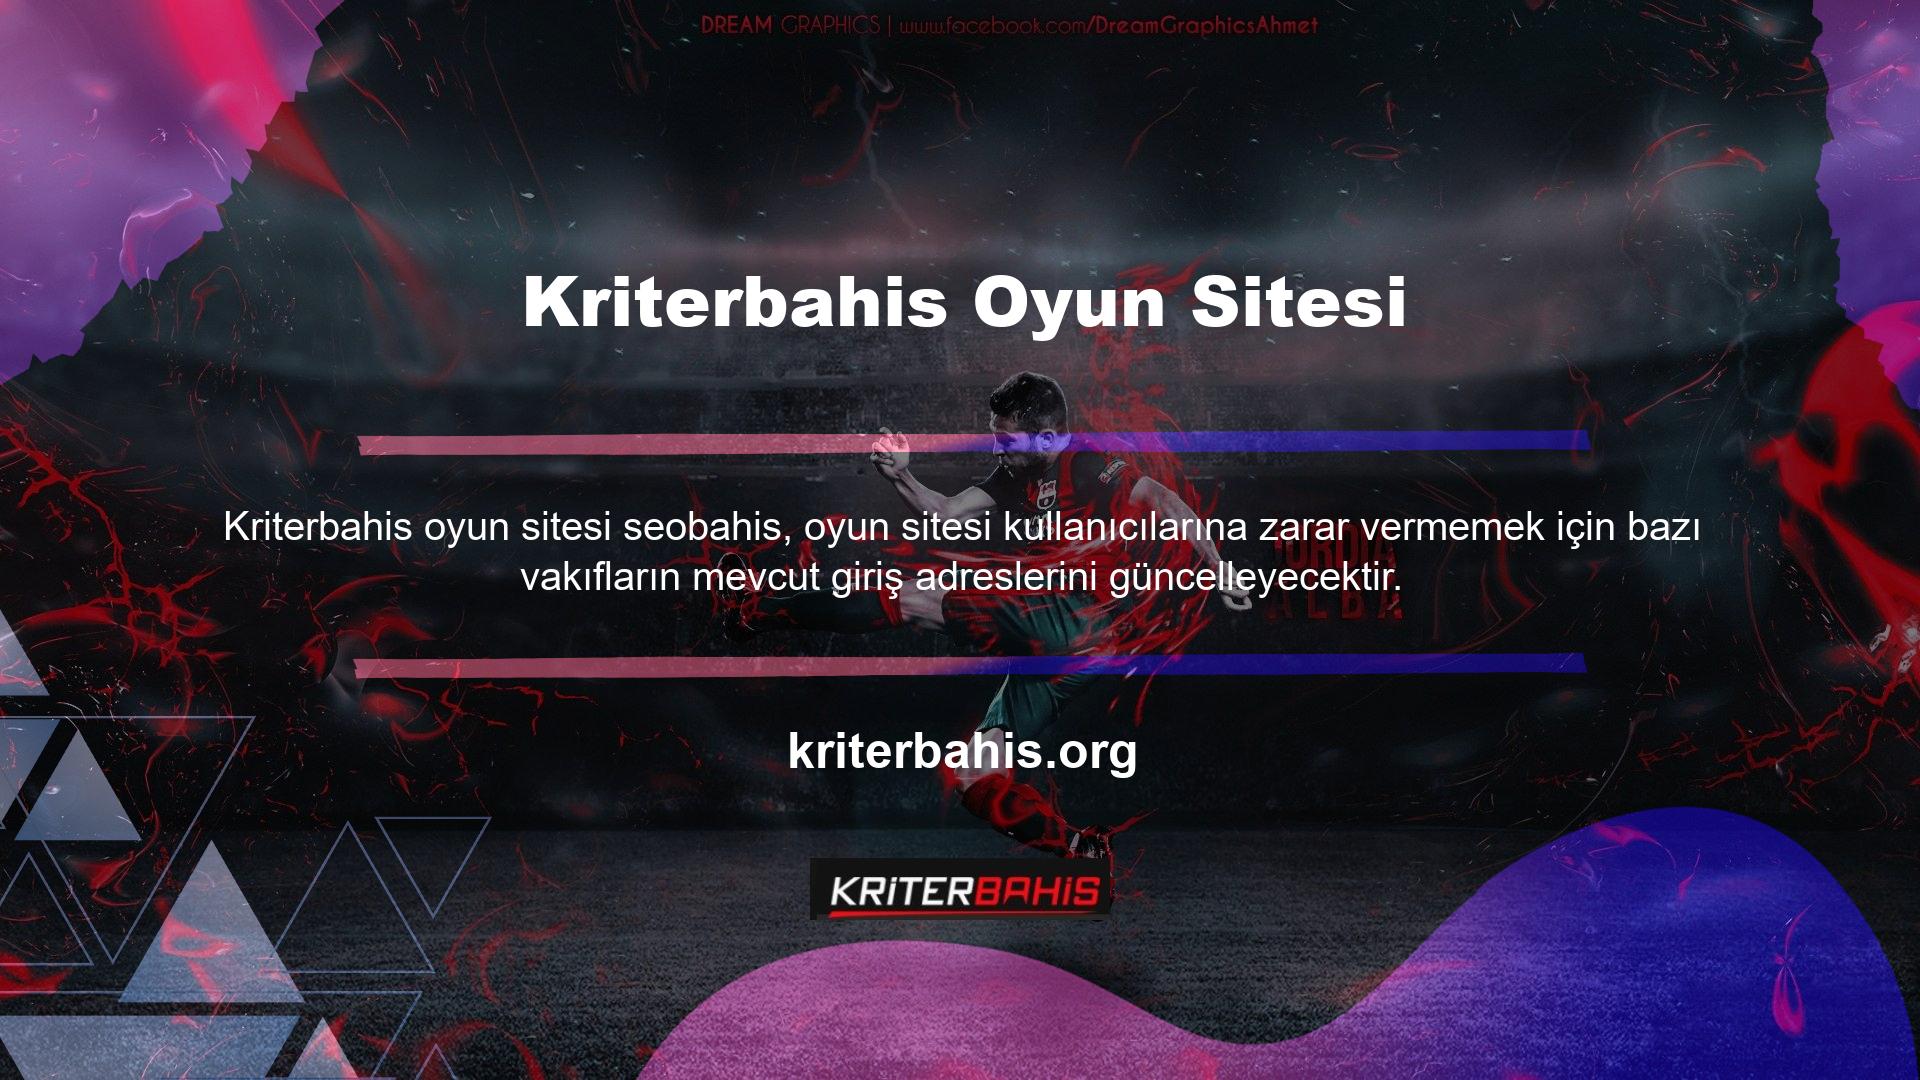 Türkiye'de BTK tabanlı oyun sitelerinin pek çok alan adı engellenmiştir